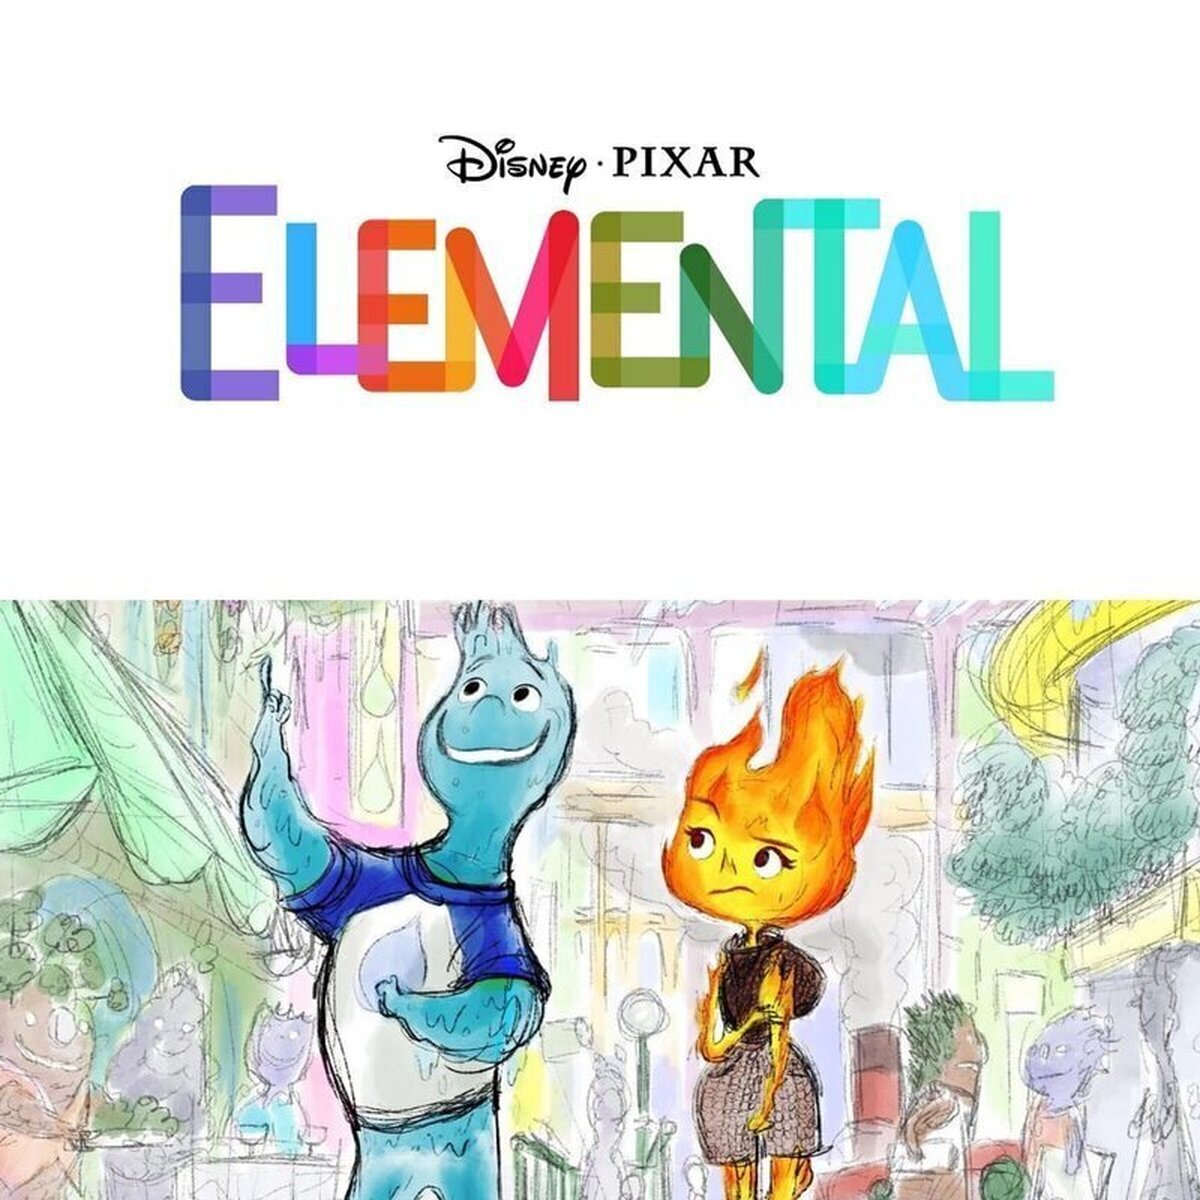 ES OFICIAL. Pixar anuncia su nueva película #Elemental. La trama seguirá la aventura de una joven de fuego y un chico de agua. En una ciudad con en la que sus habitantes son 4 elementos. En cines en verano del 2023